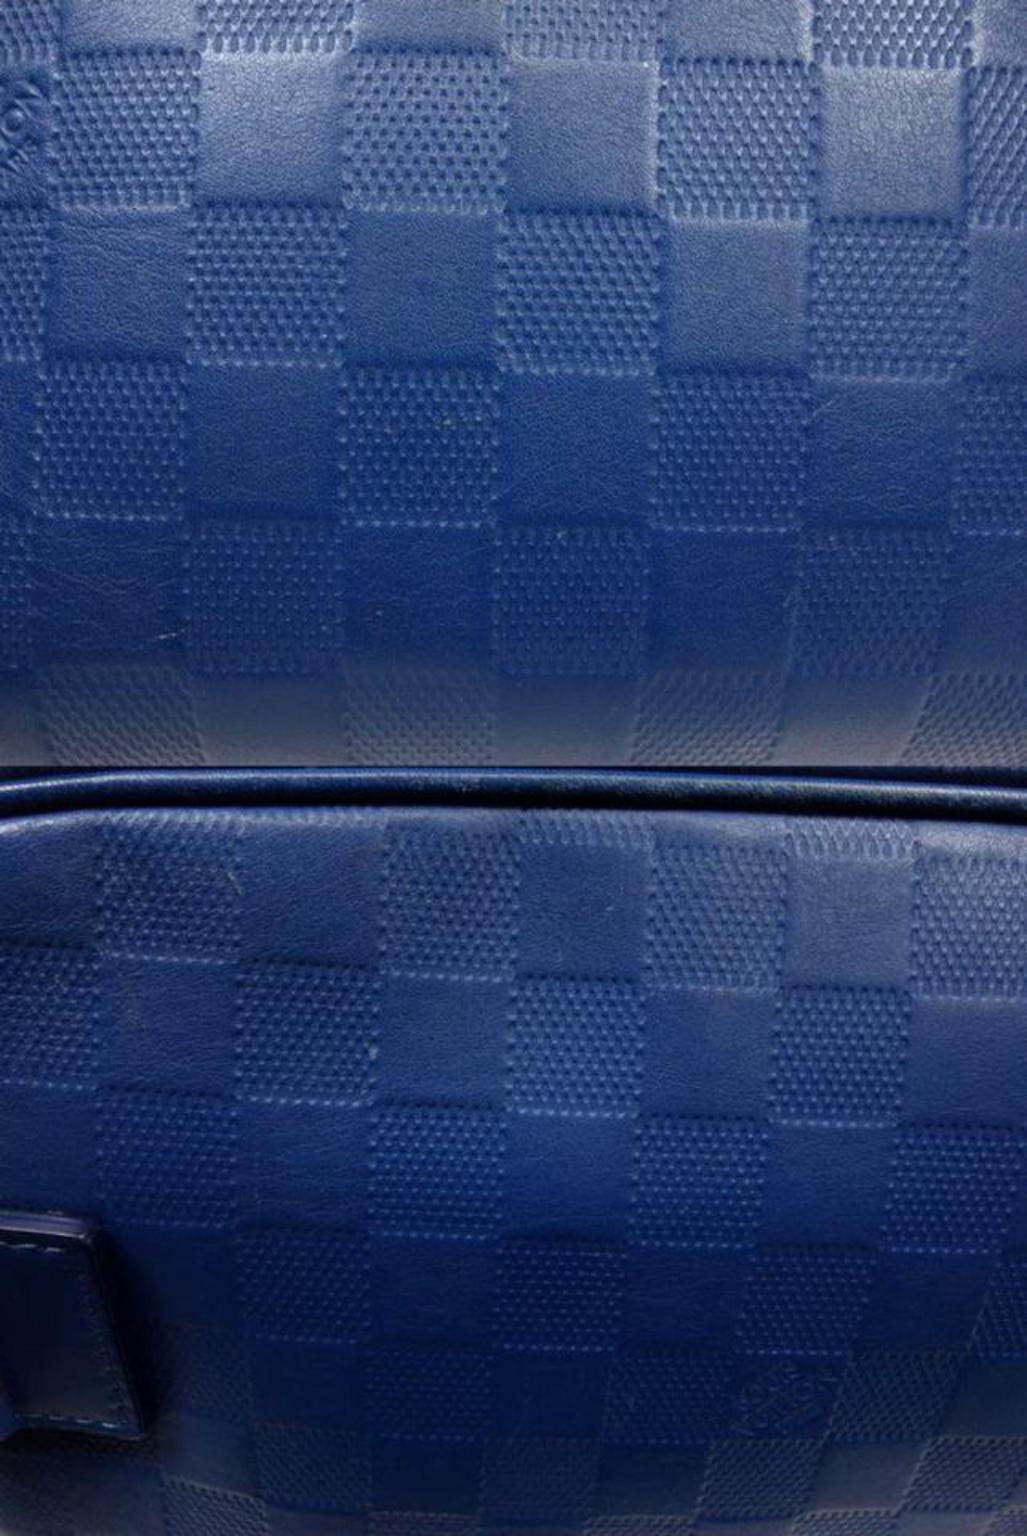 Louis Vuitton Damier Ambler Fanny Pack 226779 Blue Infini Leather Cross Body Bag For Sale 4